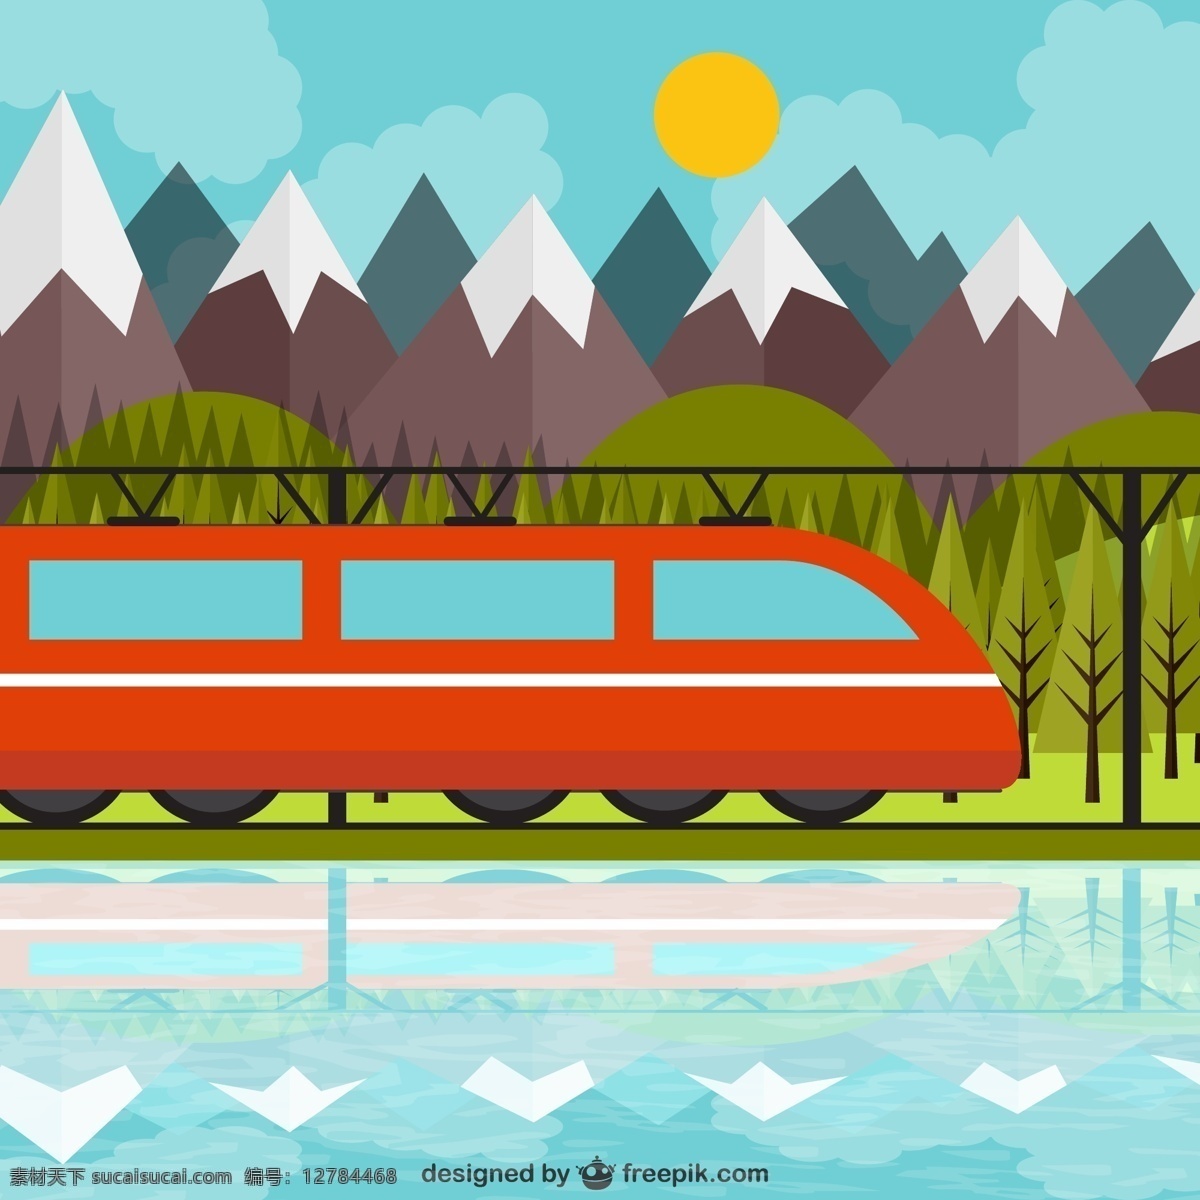 红色 精美 列车 美景 交通工具 火车 红色火车 轨道 树林 山 太阳 矢量素材 青色 天蓝色